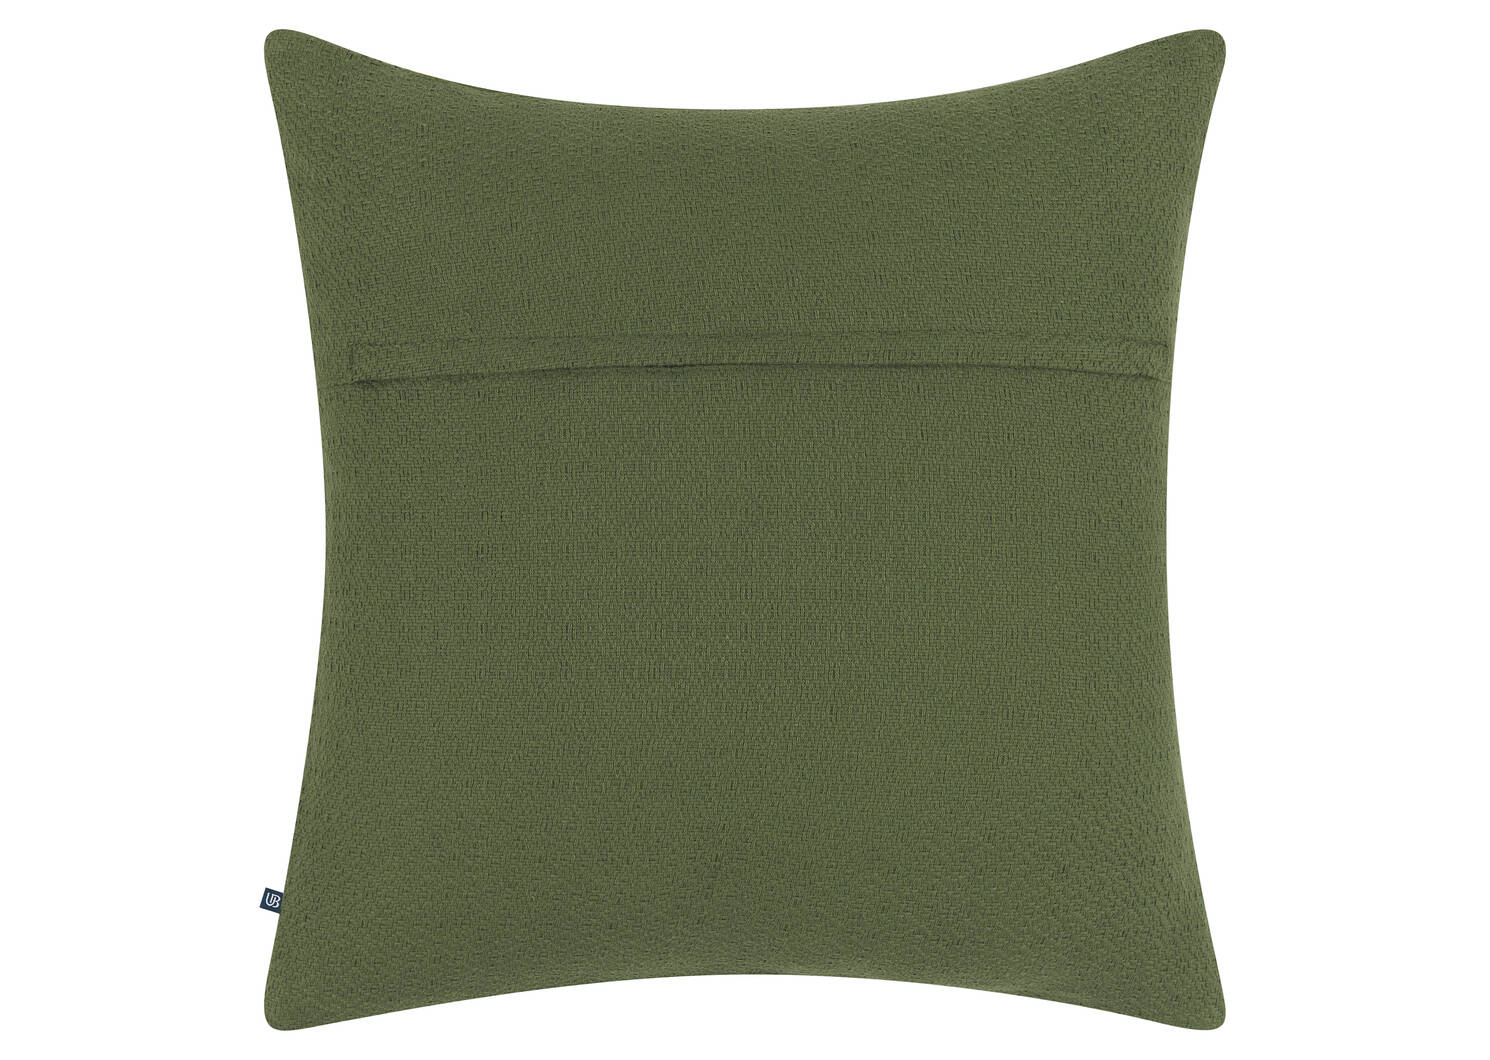 Turvi Cotton Pillow 20x20 Cypress